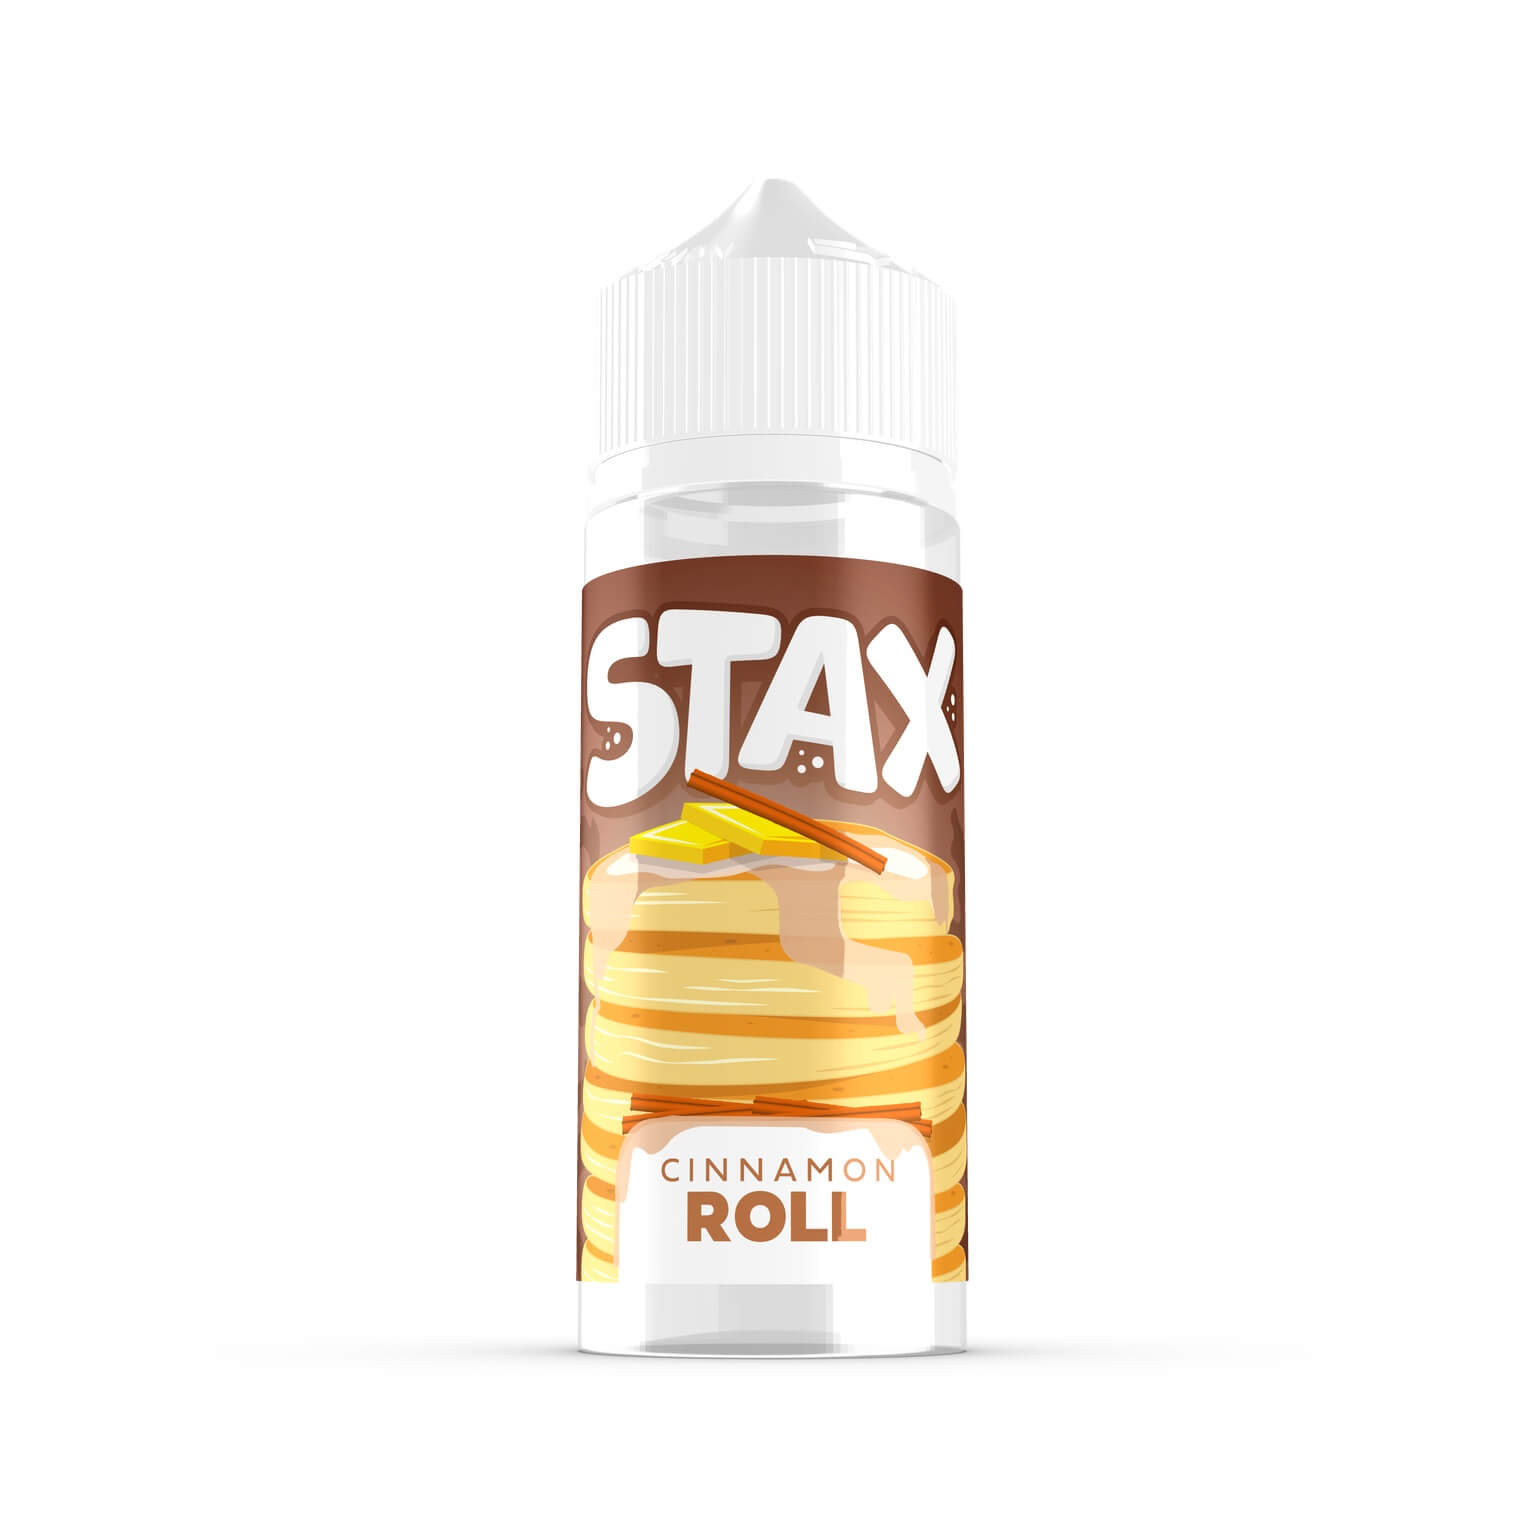 Stax cinnamon roll 100ml shortfill e-liquid available at dispergo vaping uk